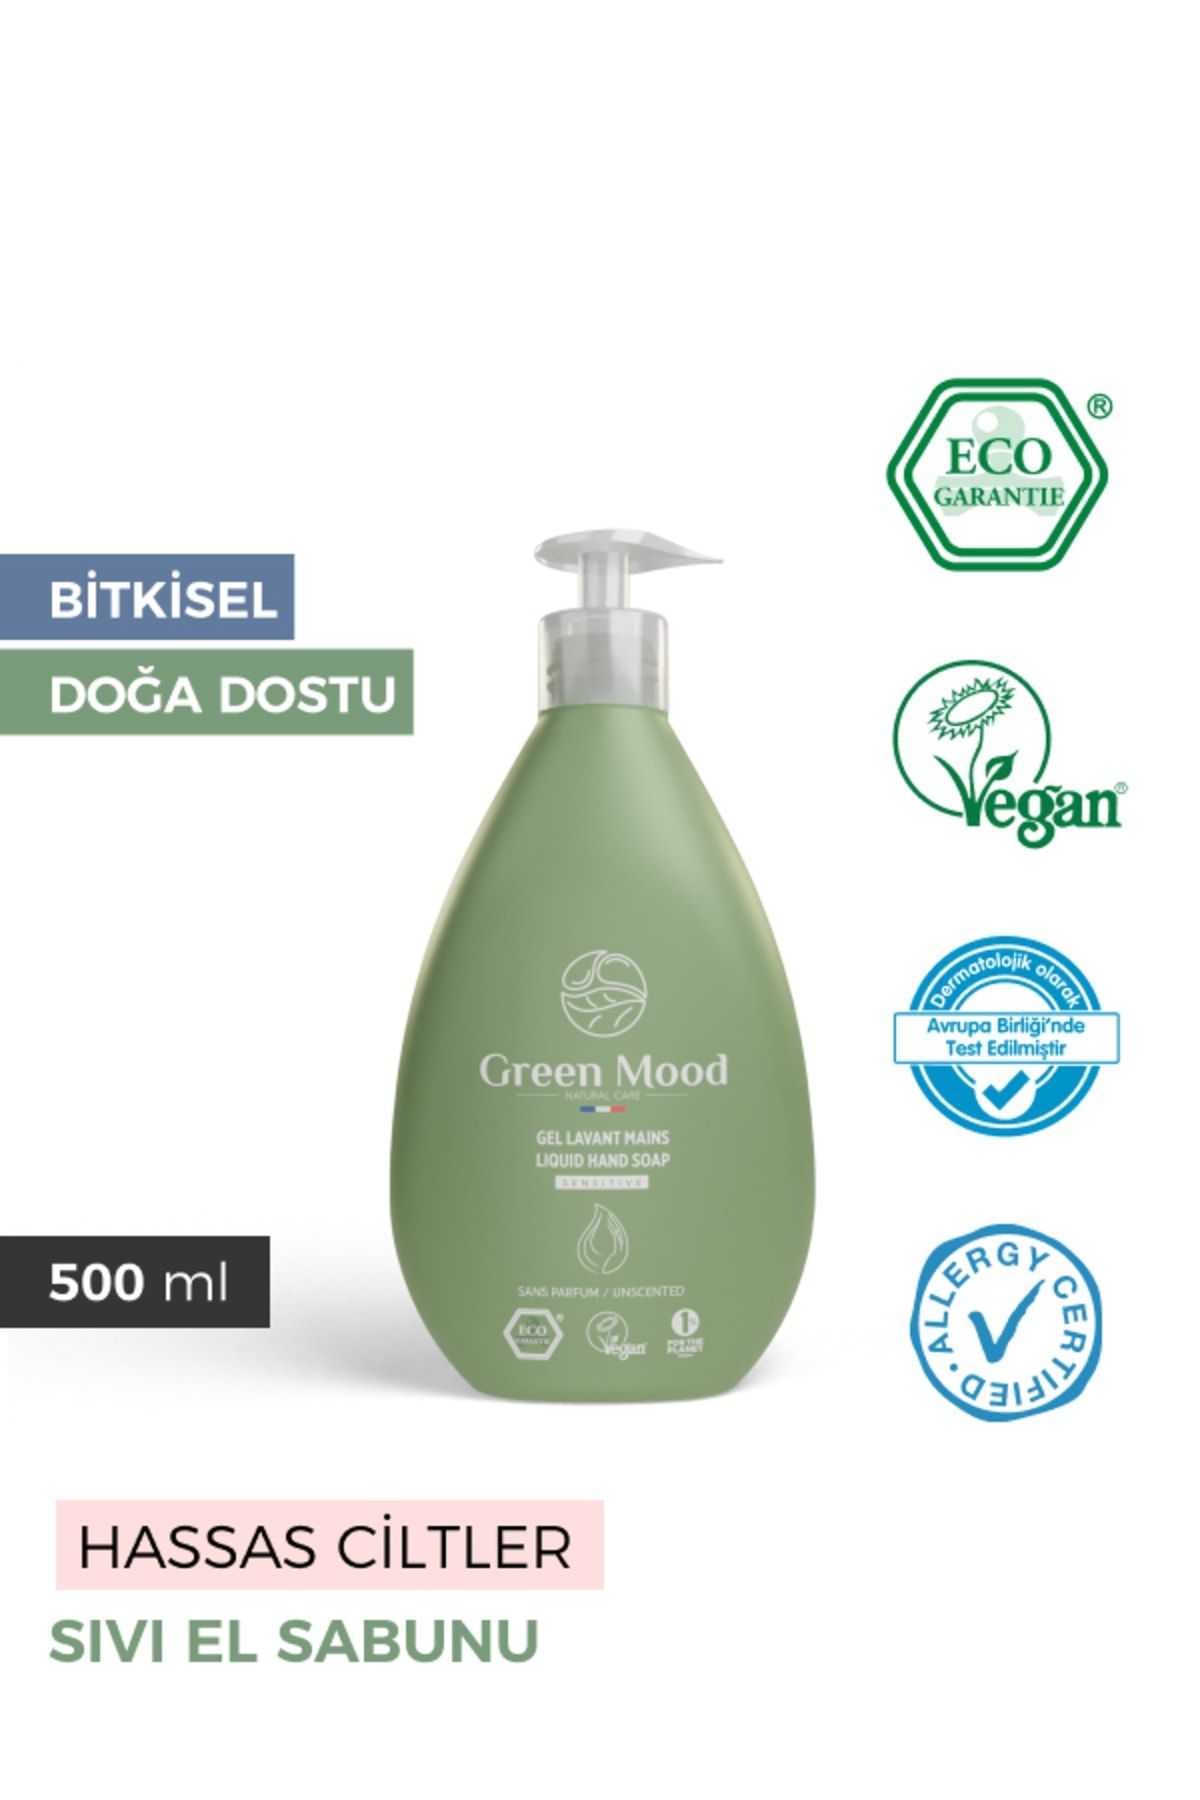 Green Mood Bitkisel Vegan Sensitive Sıvı El Sabunu Parfümsüz Alerji Sertifikalı 500 ml